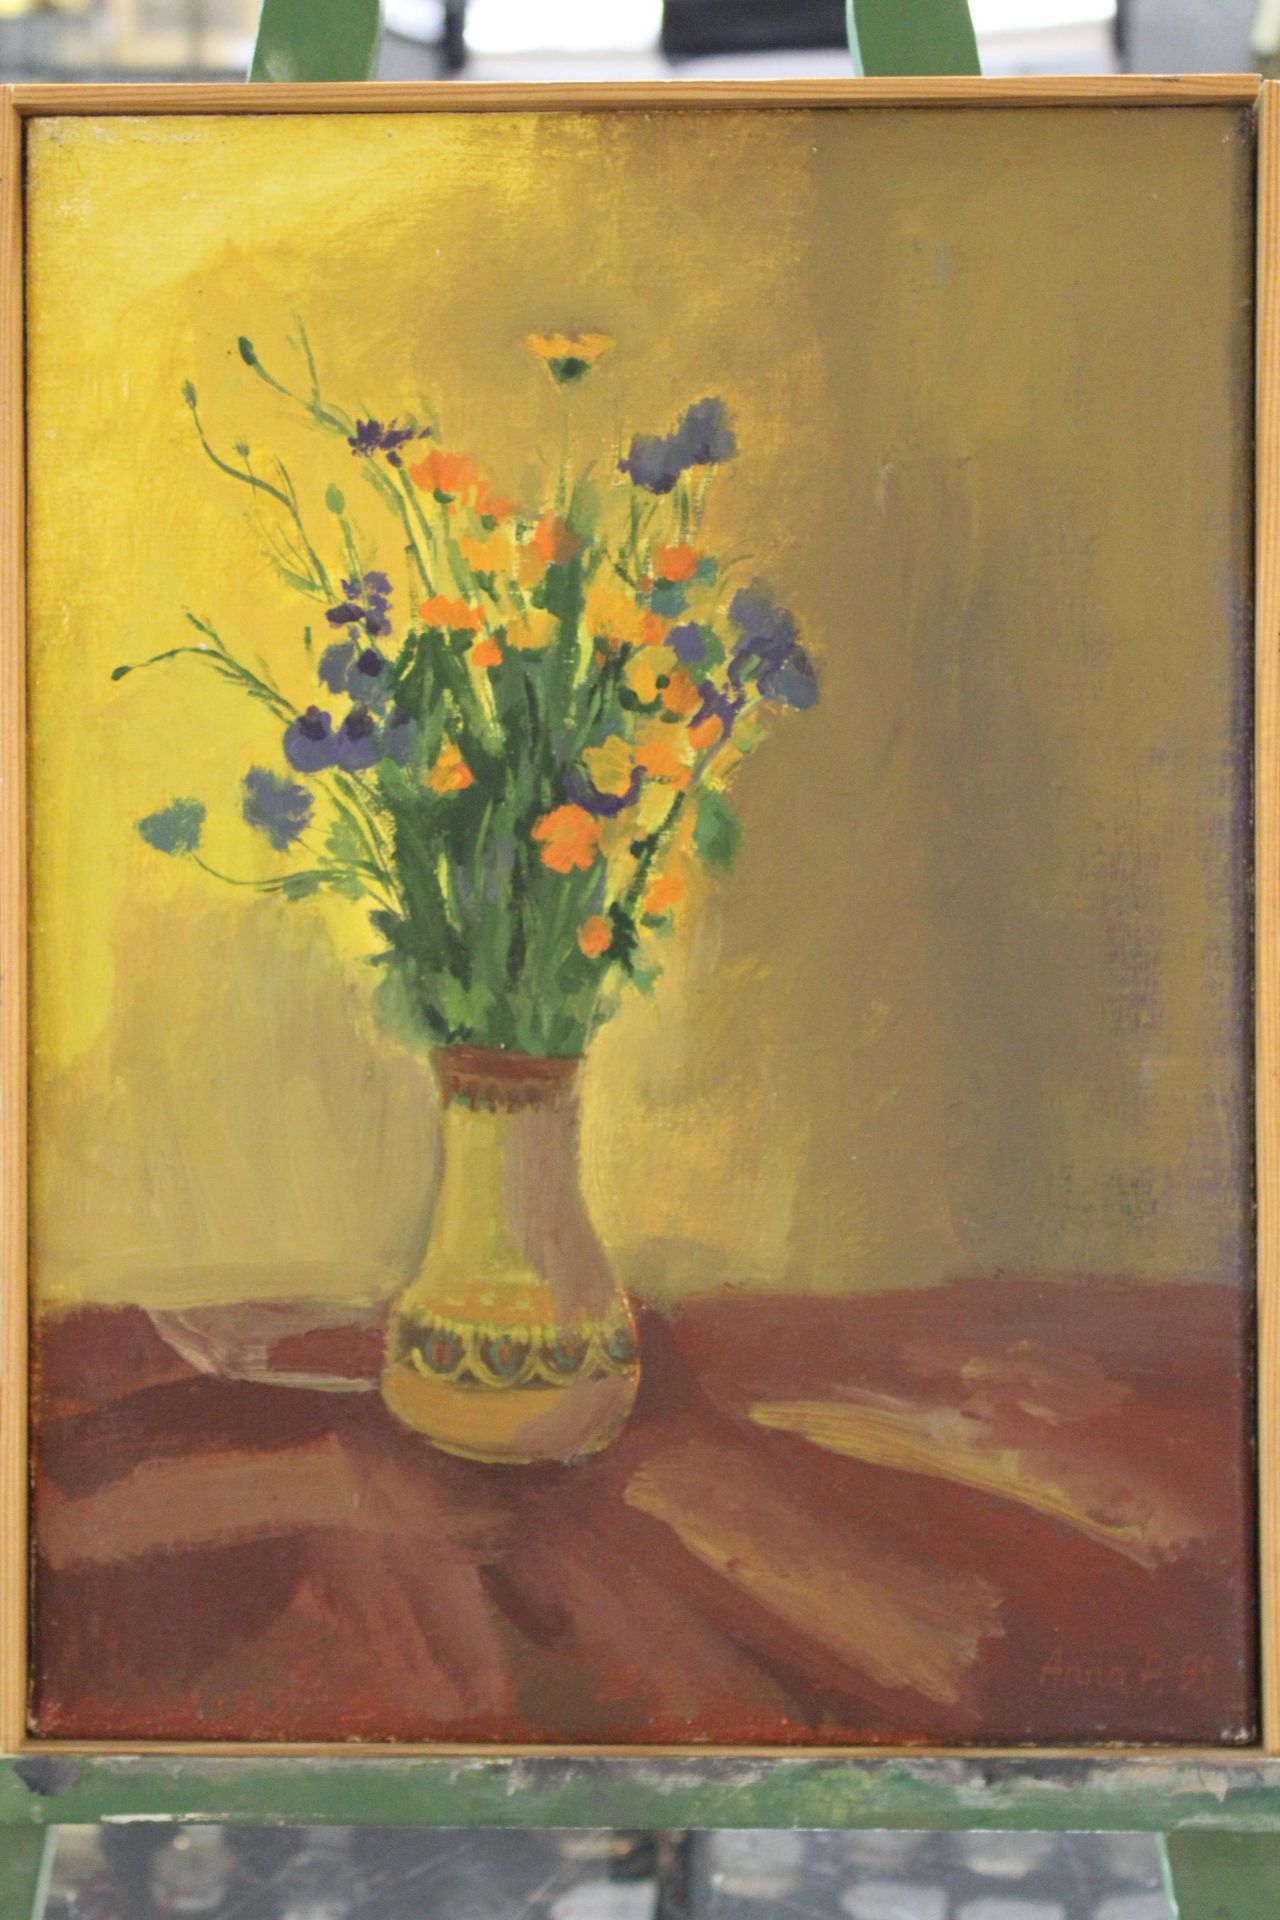 Anna Pomykalska, (geb 1970) "Blumenstrauss" Öl/Leinen, 40x30 cm, gerahmt